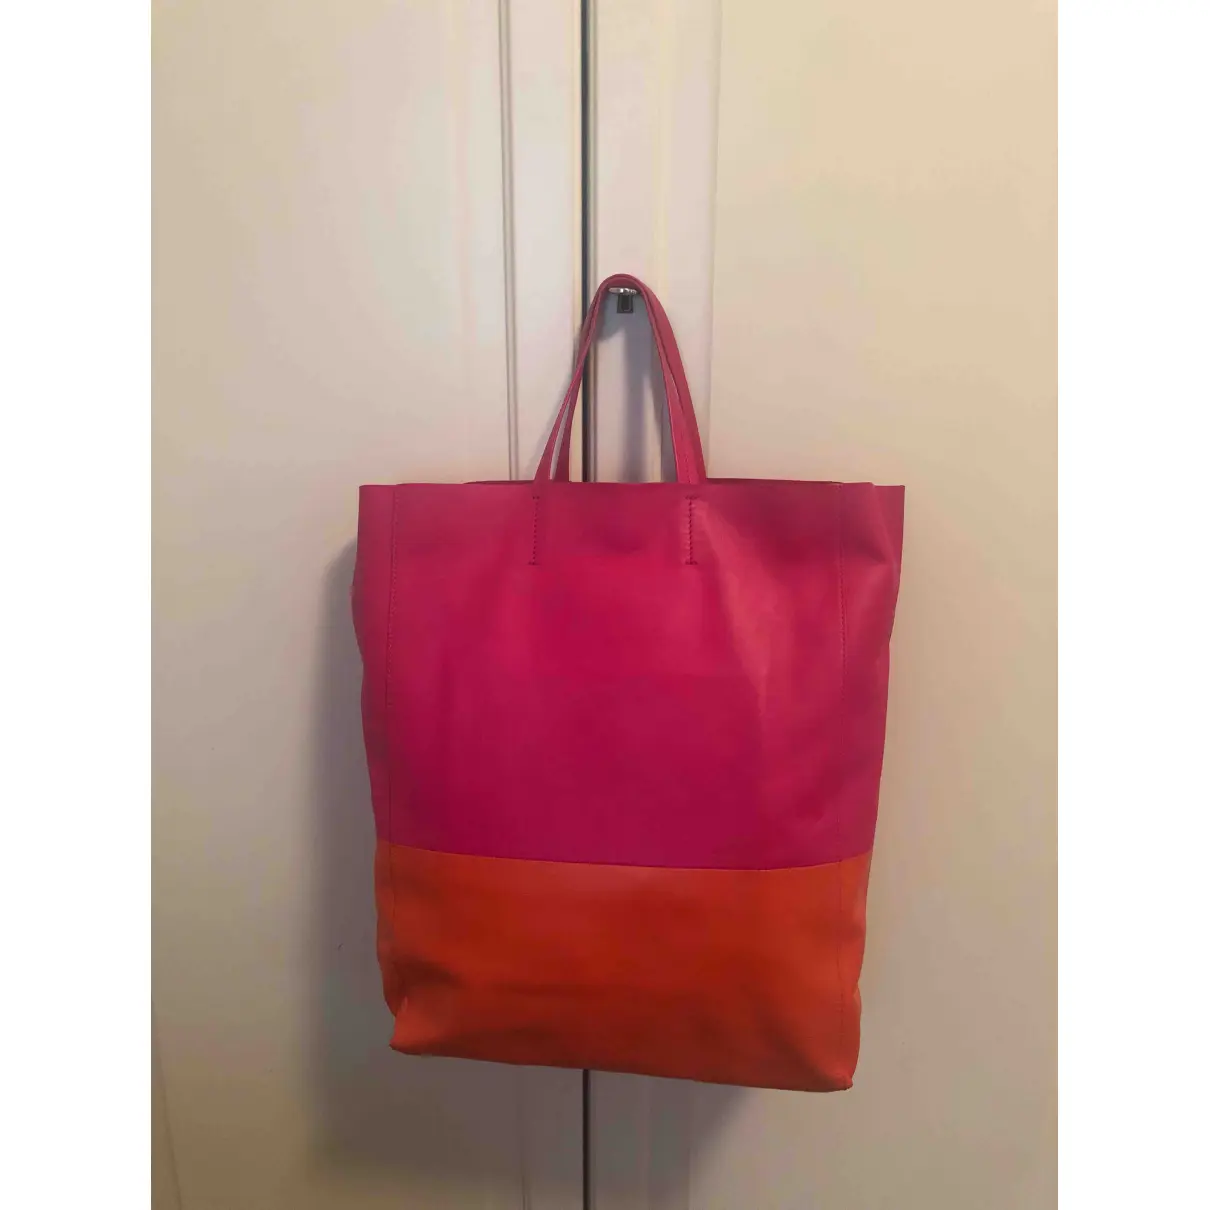 Buy Celine Made In Tote Bag leather handbag online